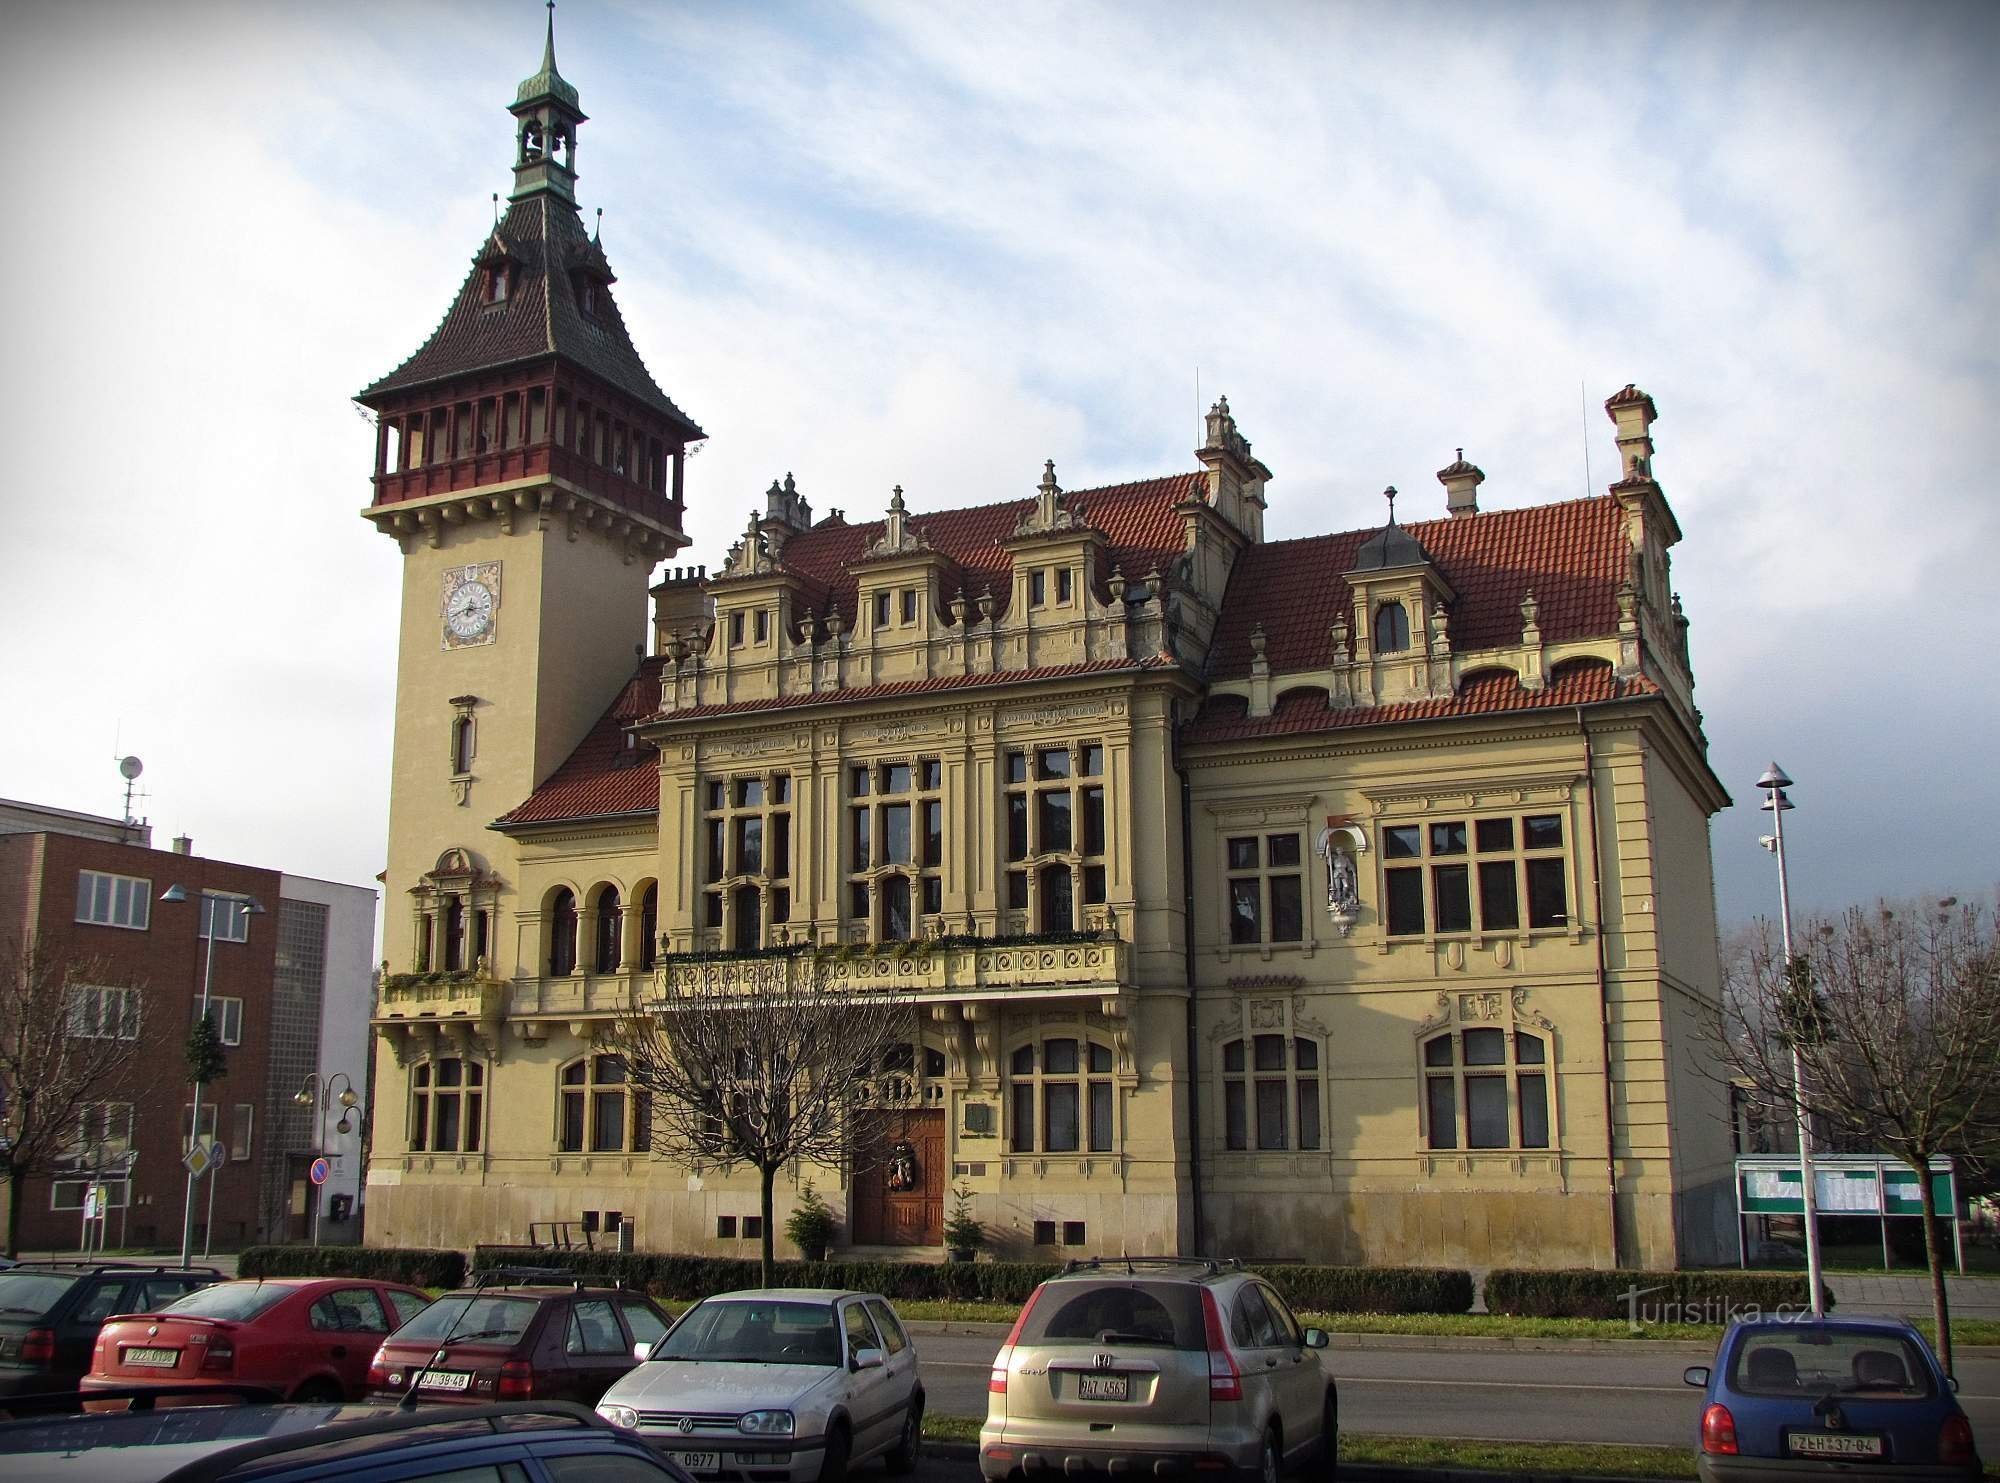 Rathaus von Napajedelsk